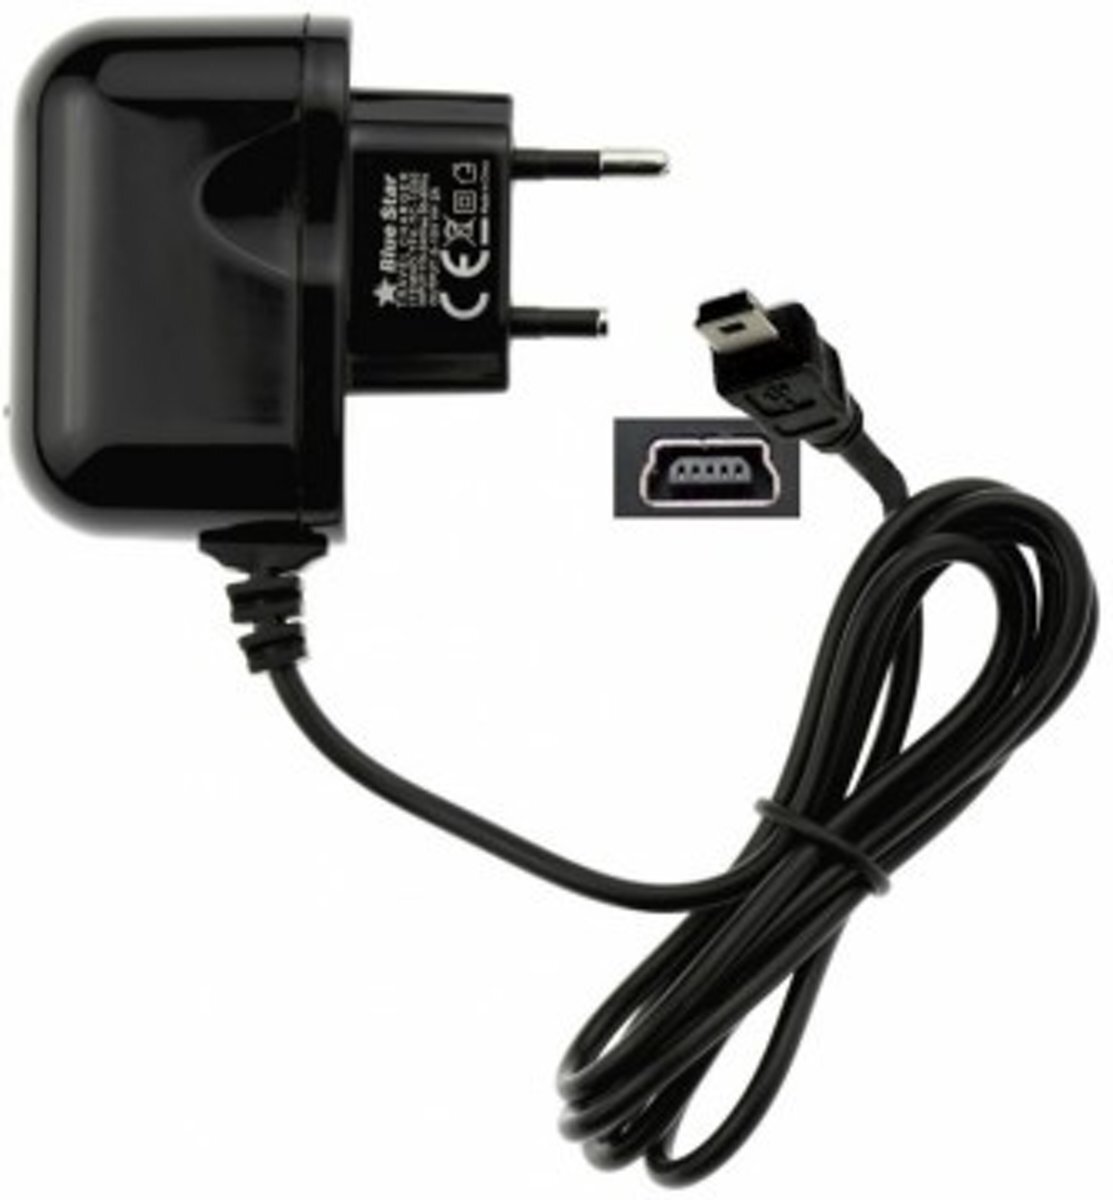 ABC-LED Oplader 220V voor TomTom GO 750 - 2 ampere lader